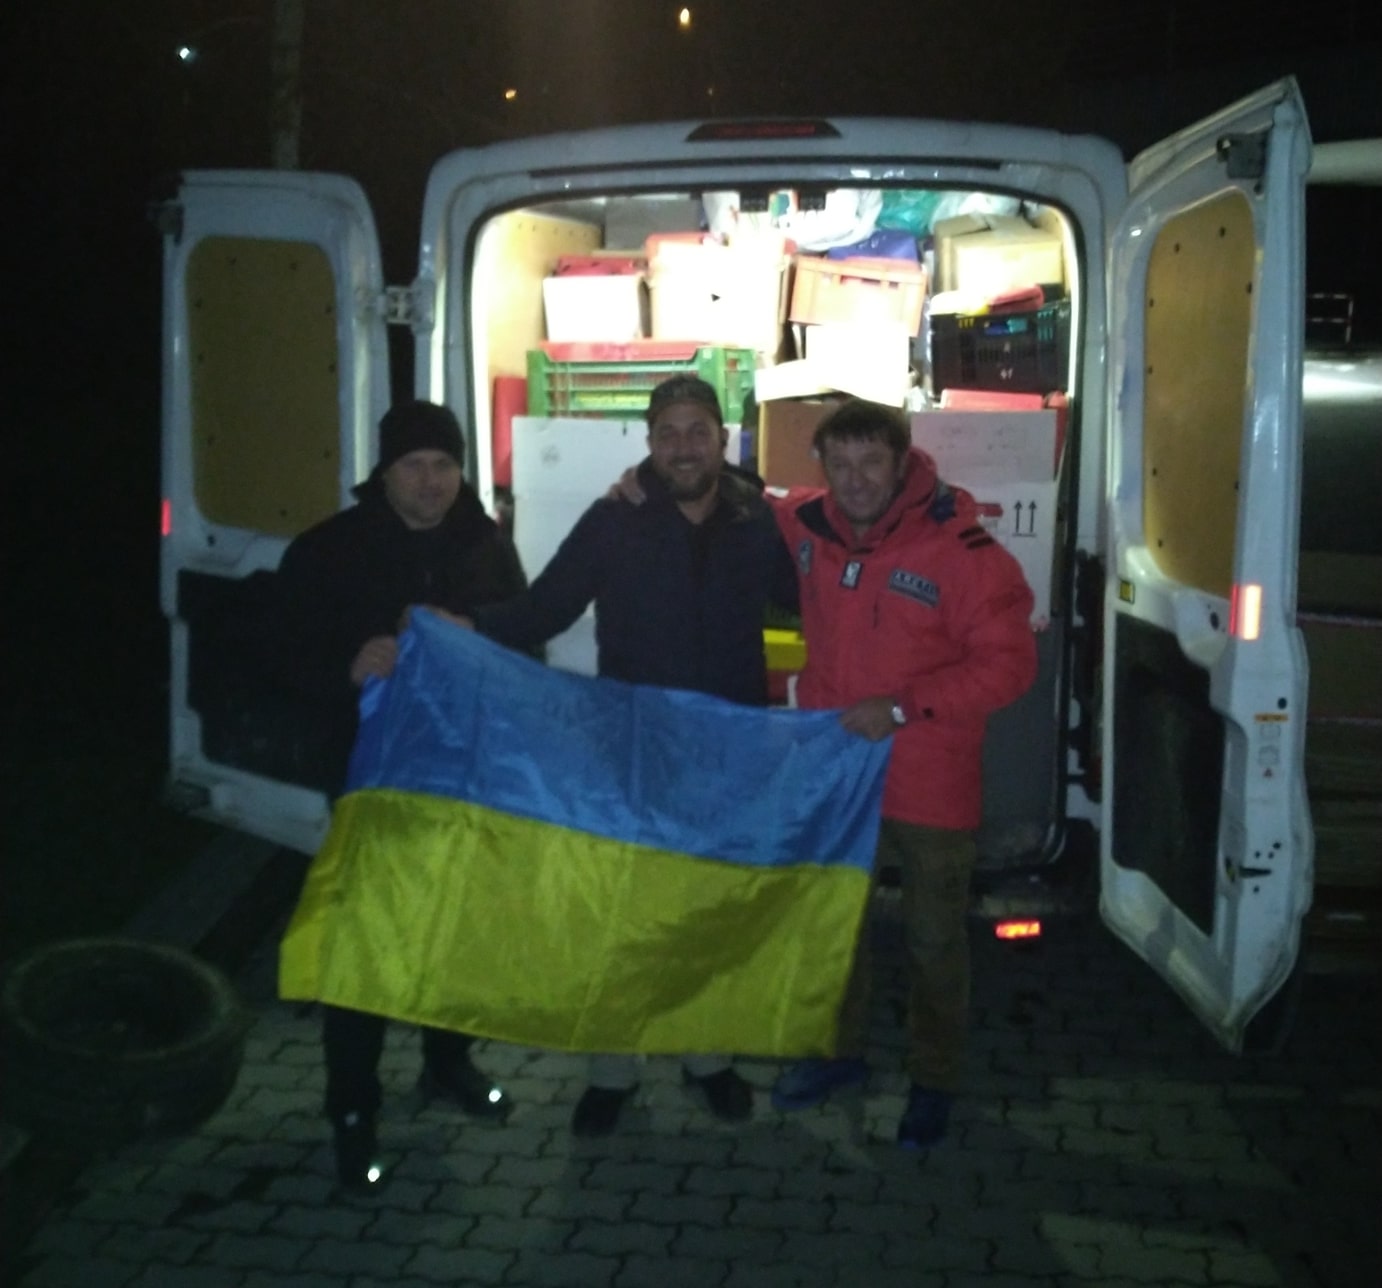 Spendenübergabe jenseits der ukrainischen Grenze zum Weitertransport nach Kiew